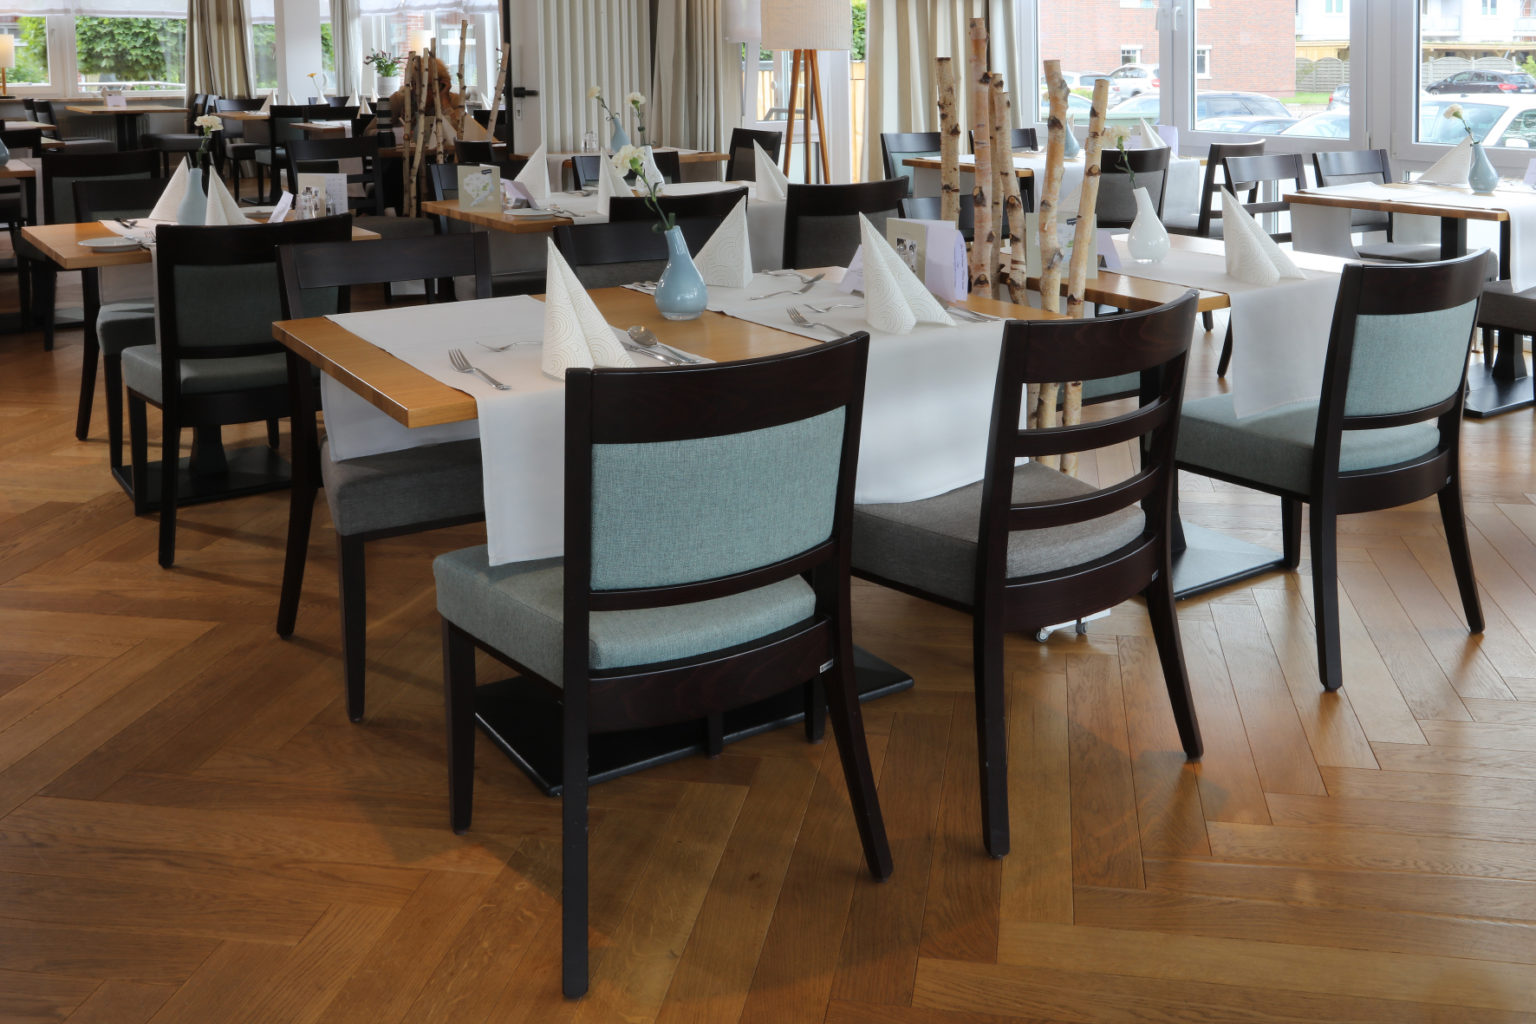 Hotel Restaurant Erholung Kellenhusen, Möblerung Stühle Tische